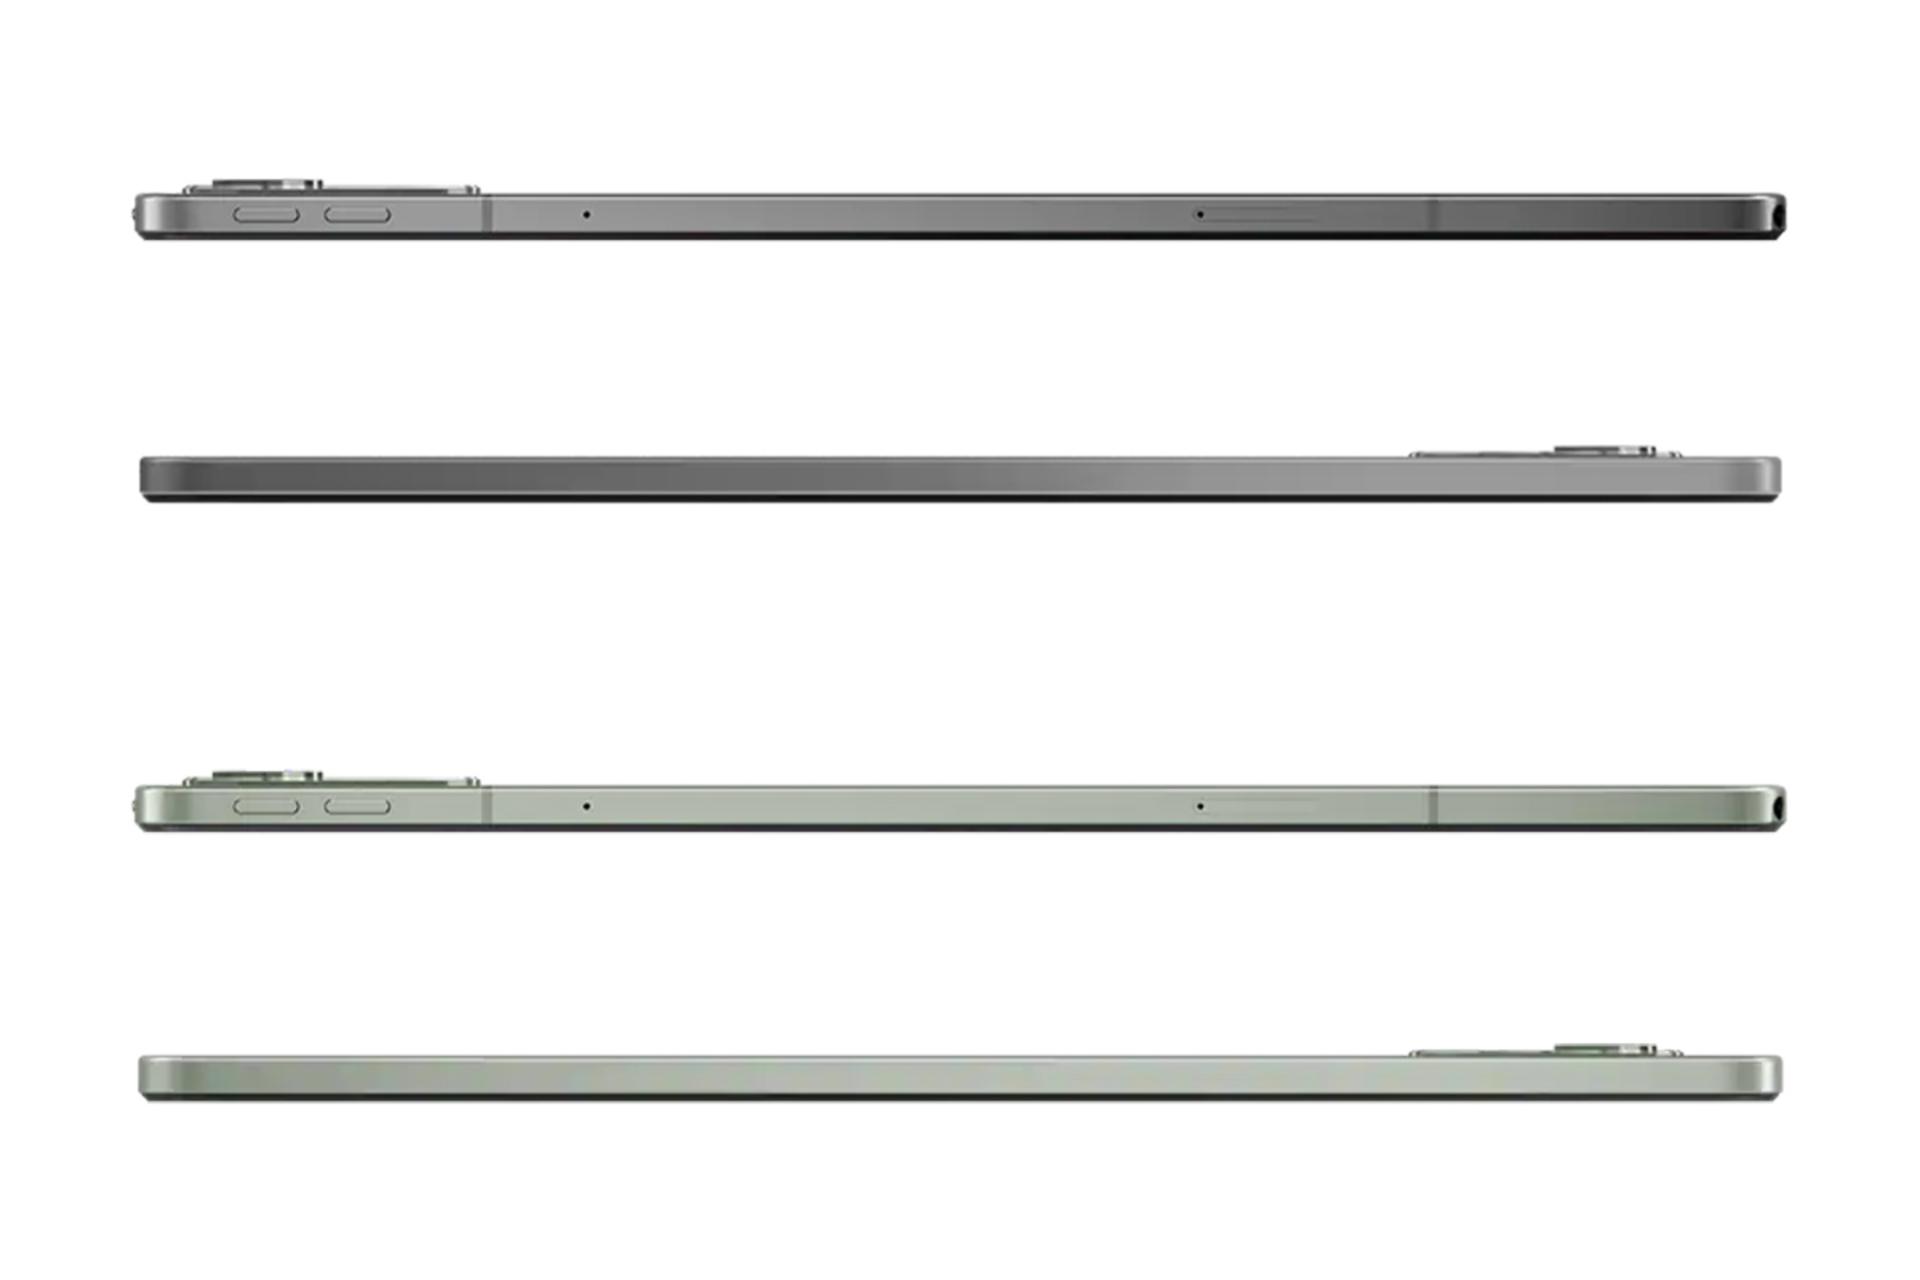 نمای لبه‌های کناری تبلت تب M11 لنوو / Lenovo Tab M11 با تمرکز روی لبه‌های چپ و راست و نمایش دکمه‌ها در دو رنگ خاکستری و سبز